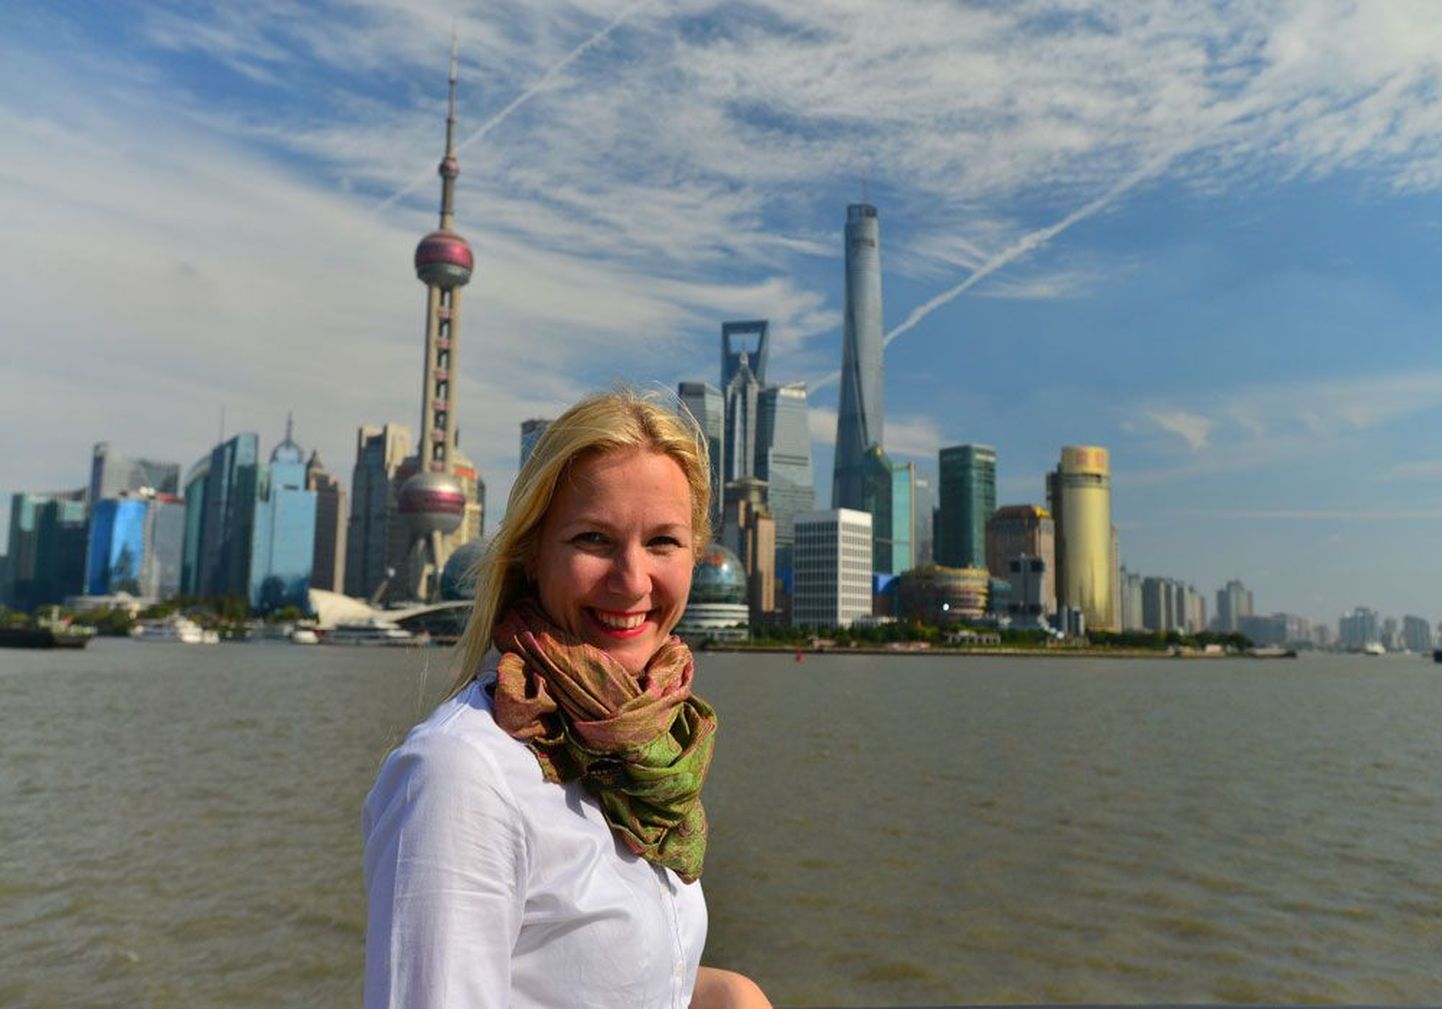 Äriilma tõmbetuultes: Karin Nemec Shanghais, taustal 
Pudongi Lujiazui finantskeskus, kus asuvad linna kõige kõrgemad pilvelõhkujad.